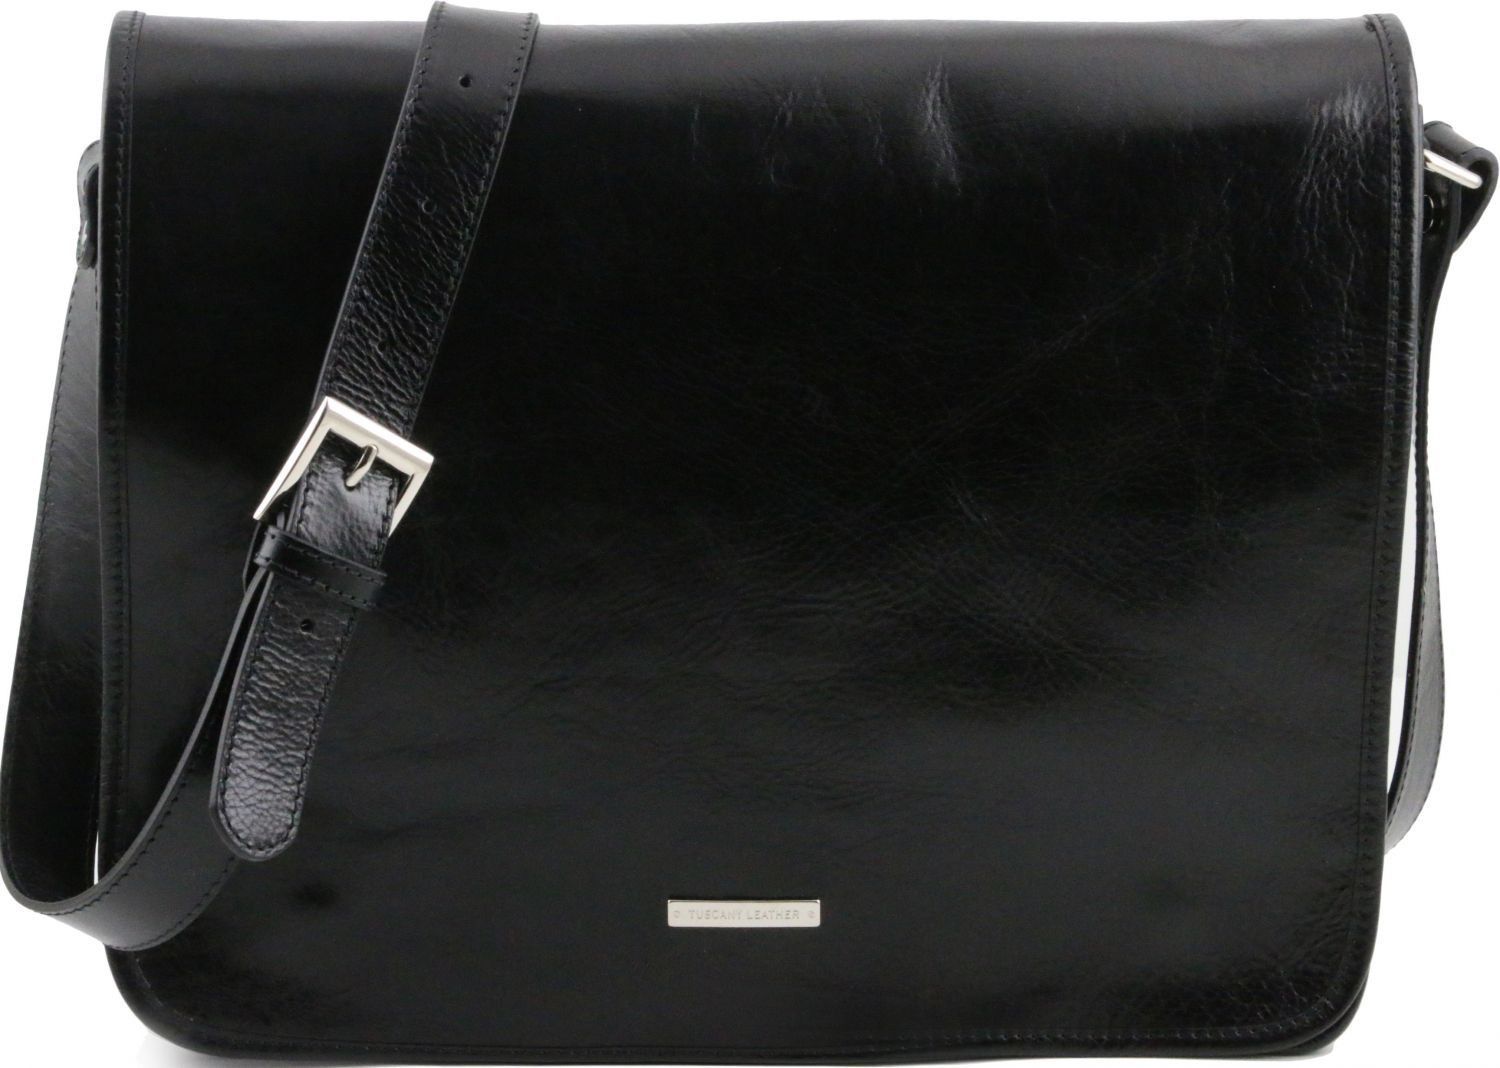 Εικόνα από Ανδρική Τσάντα Δερμάτινη Messenger TL141254 Μαύρο Tuscany Leather